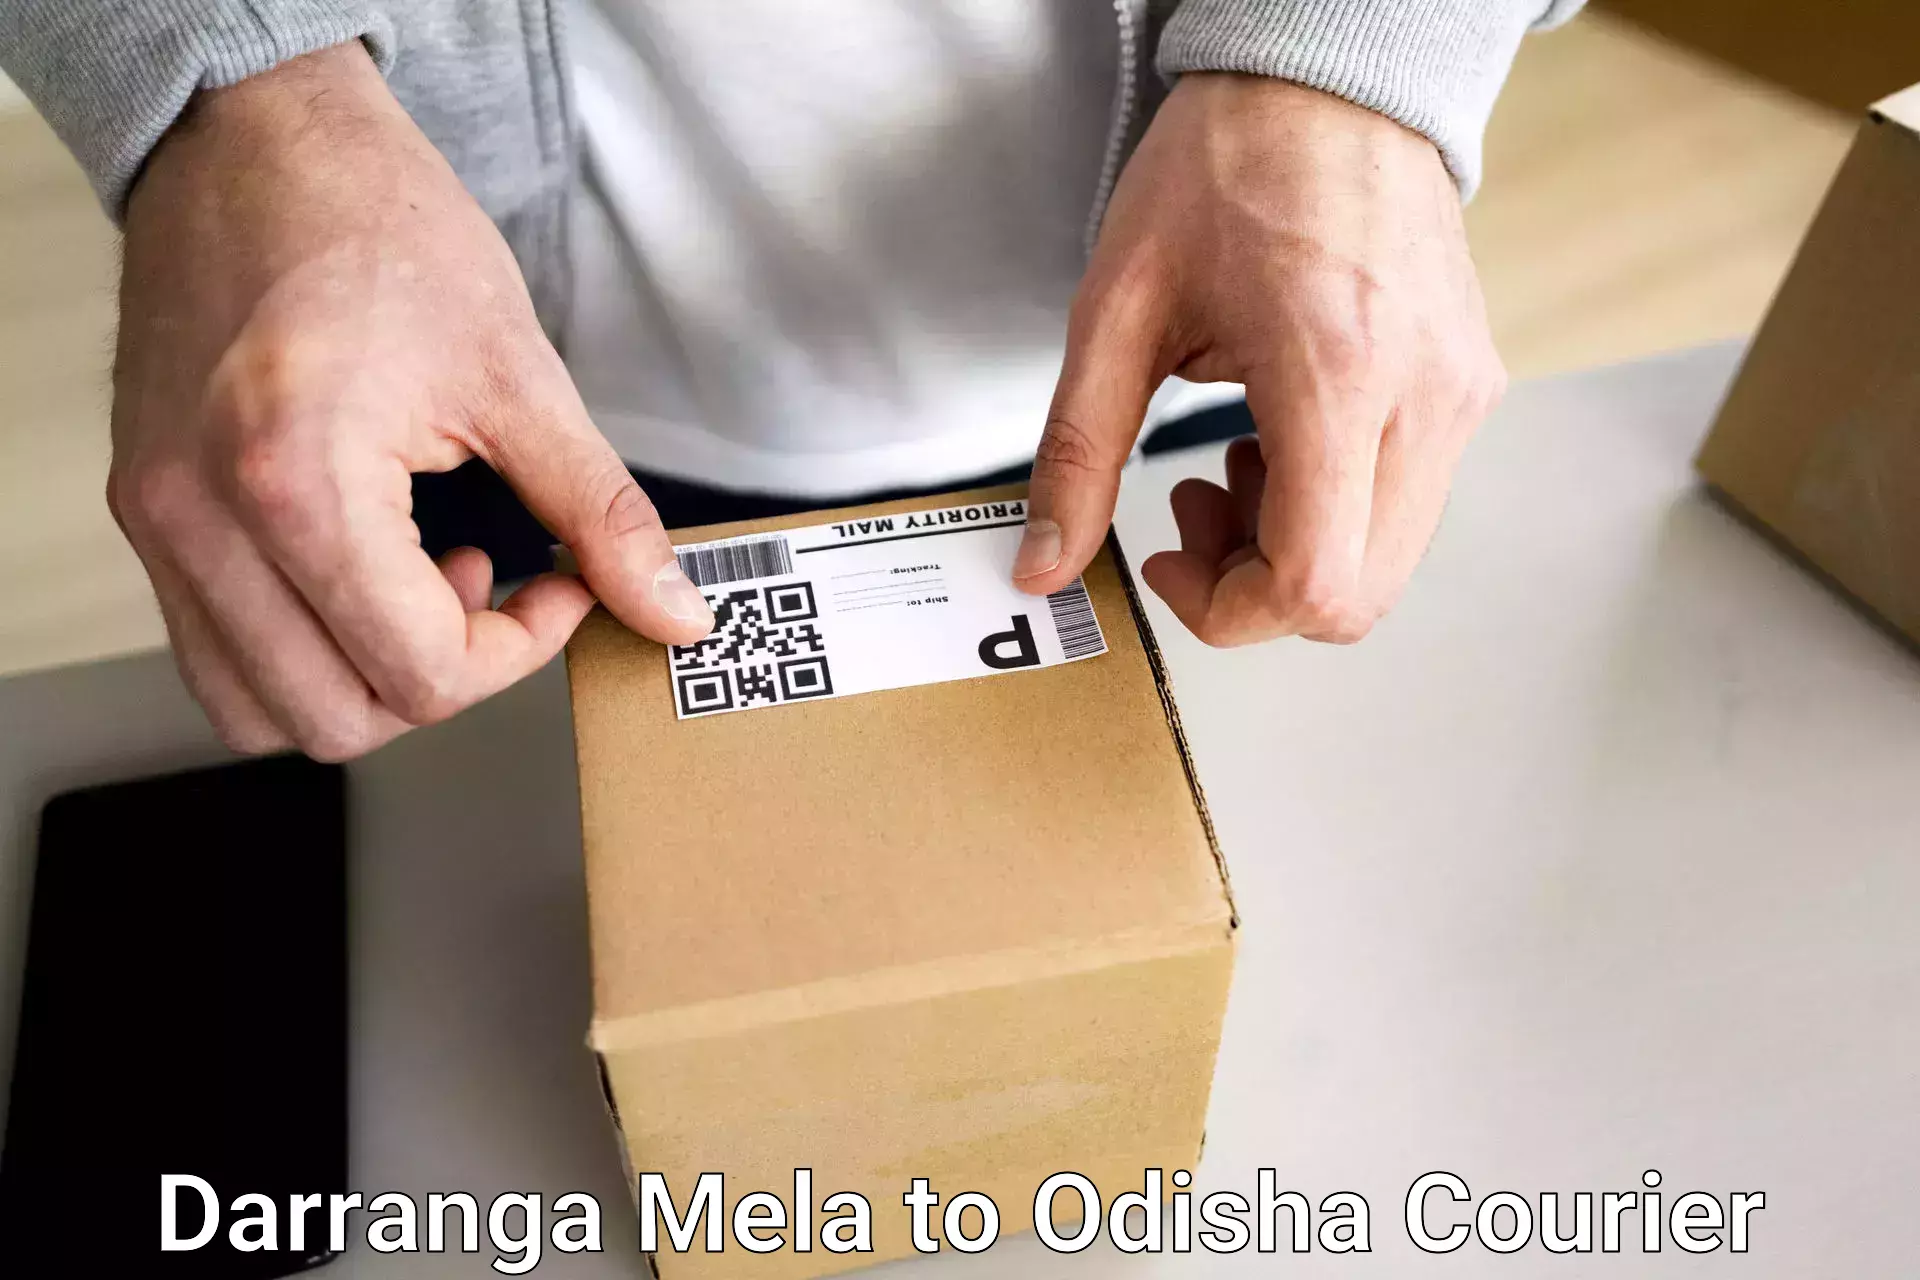 Affordable luggage courier in Darranga Mela to Jaipatna